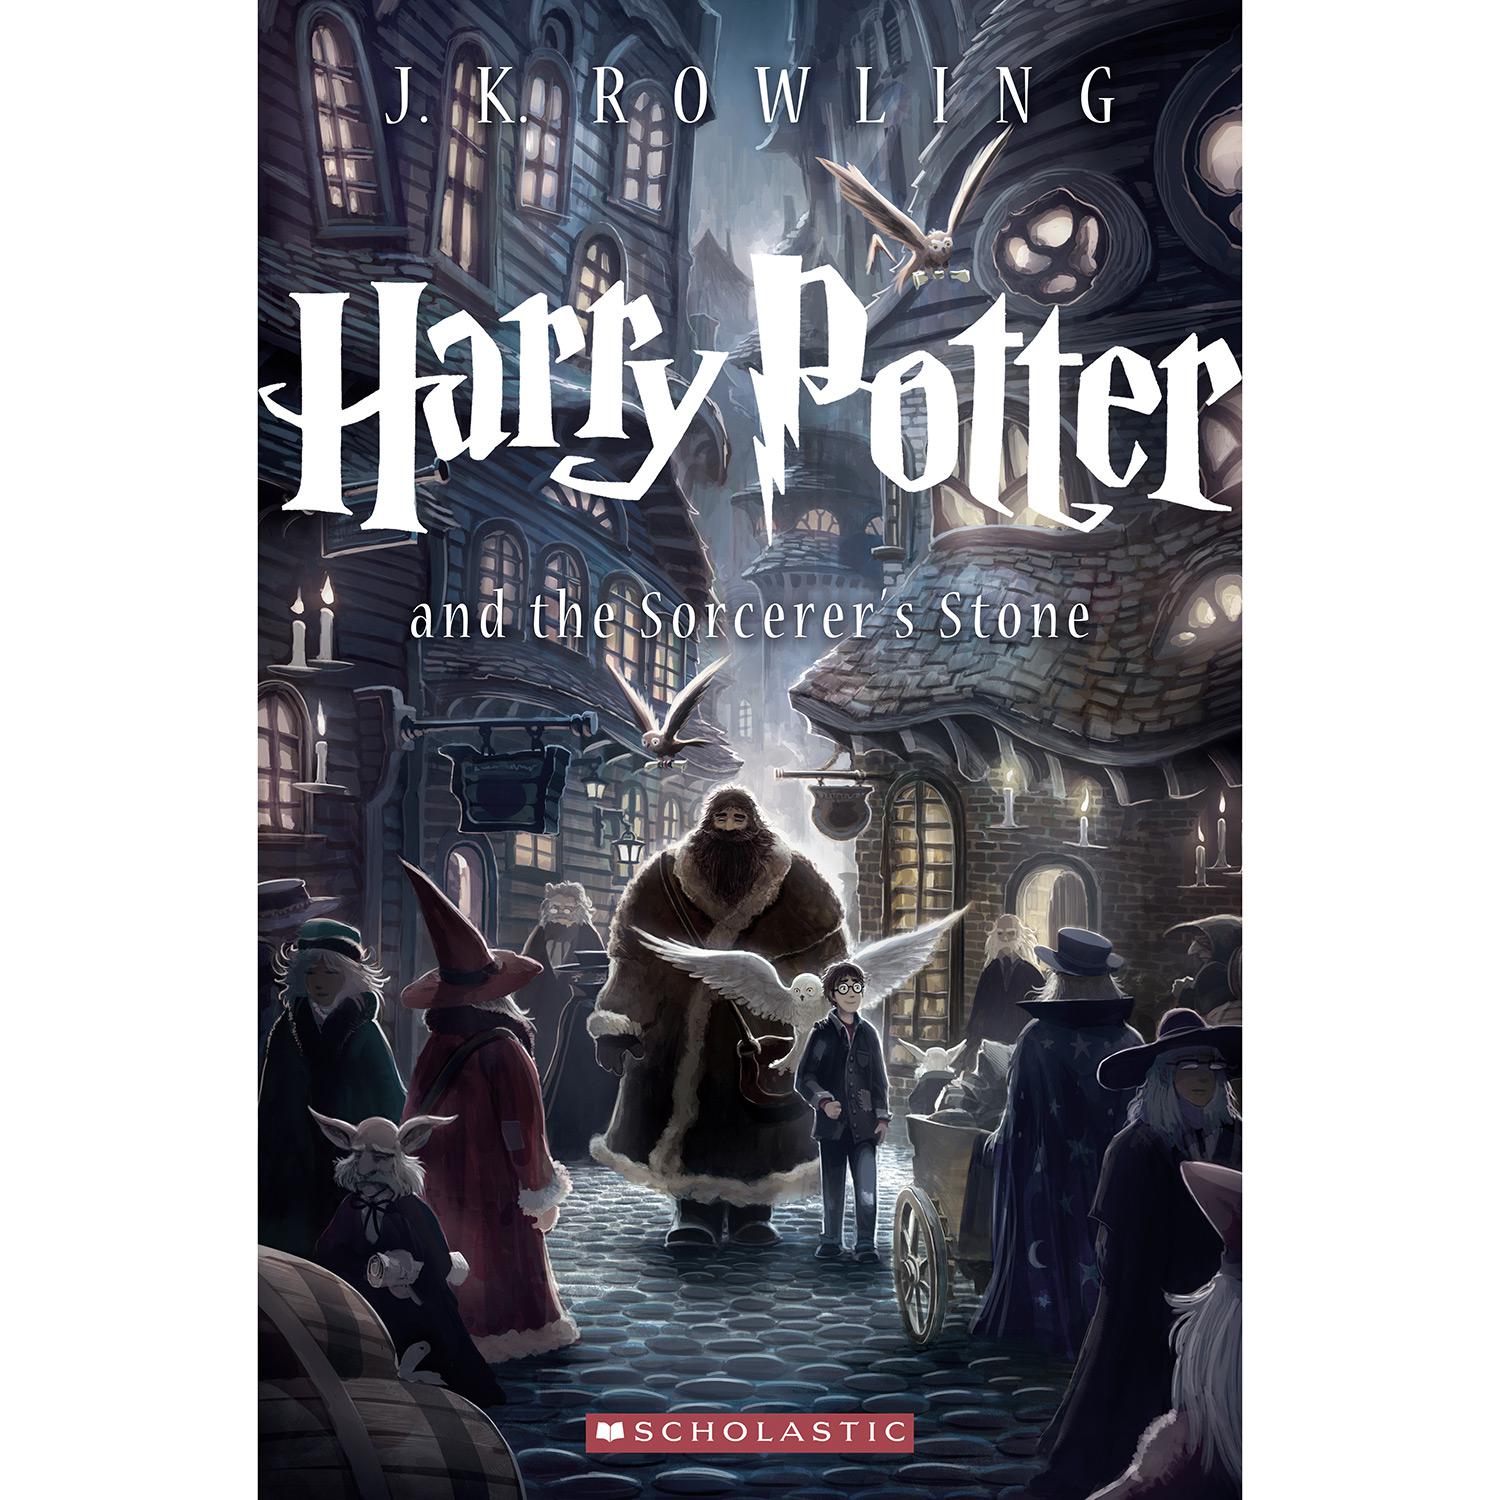 Livro - Harry Potter And The Sorcerer's Stone é bom? Vale a pena?